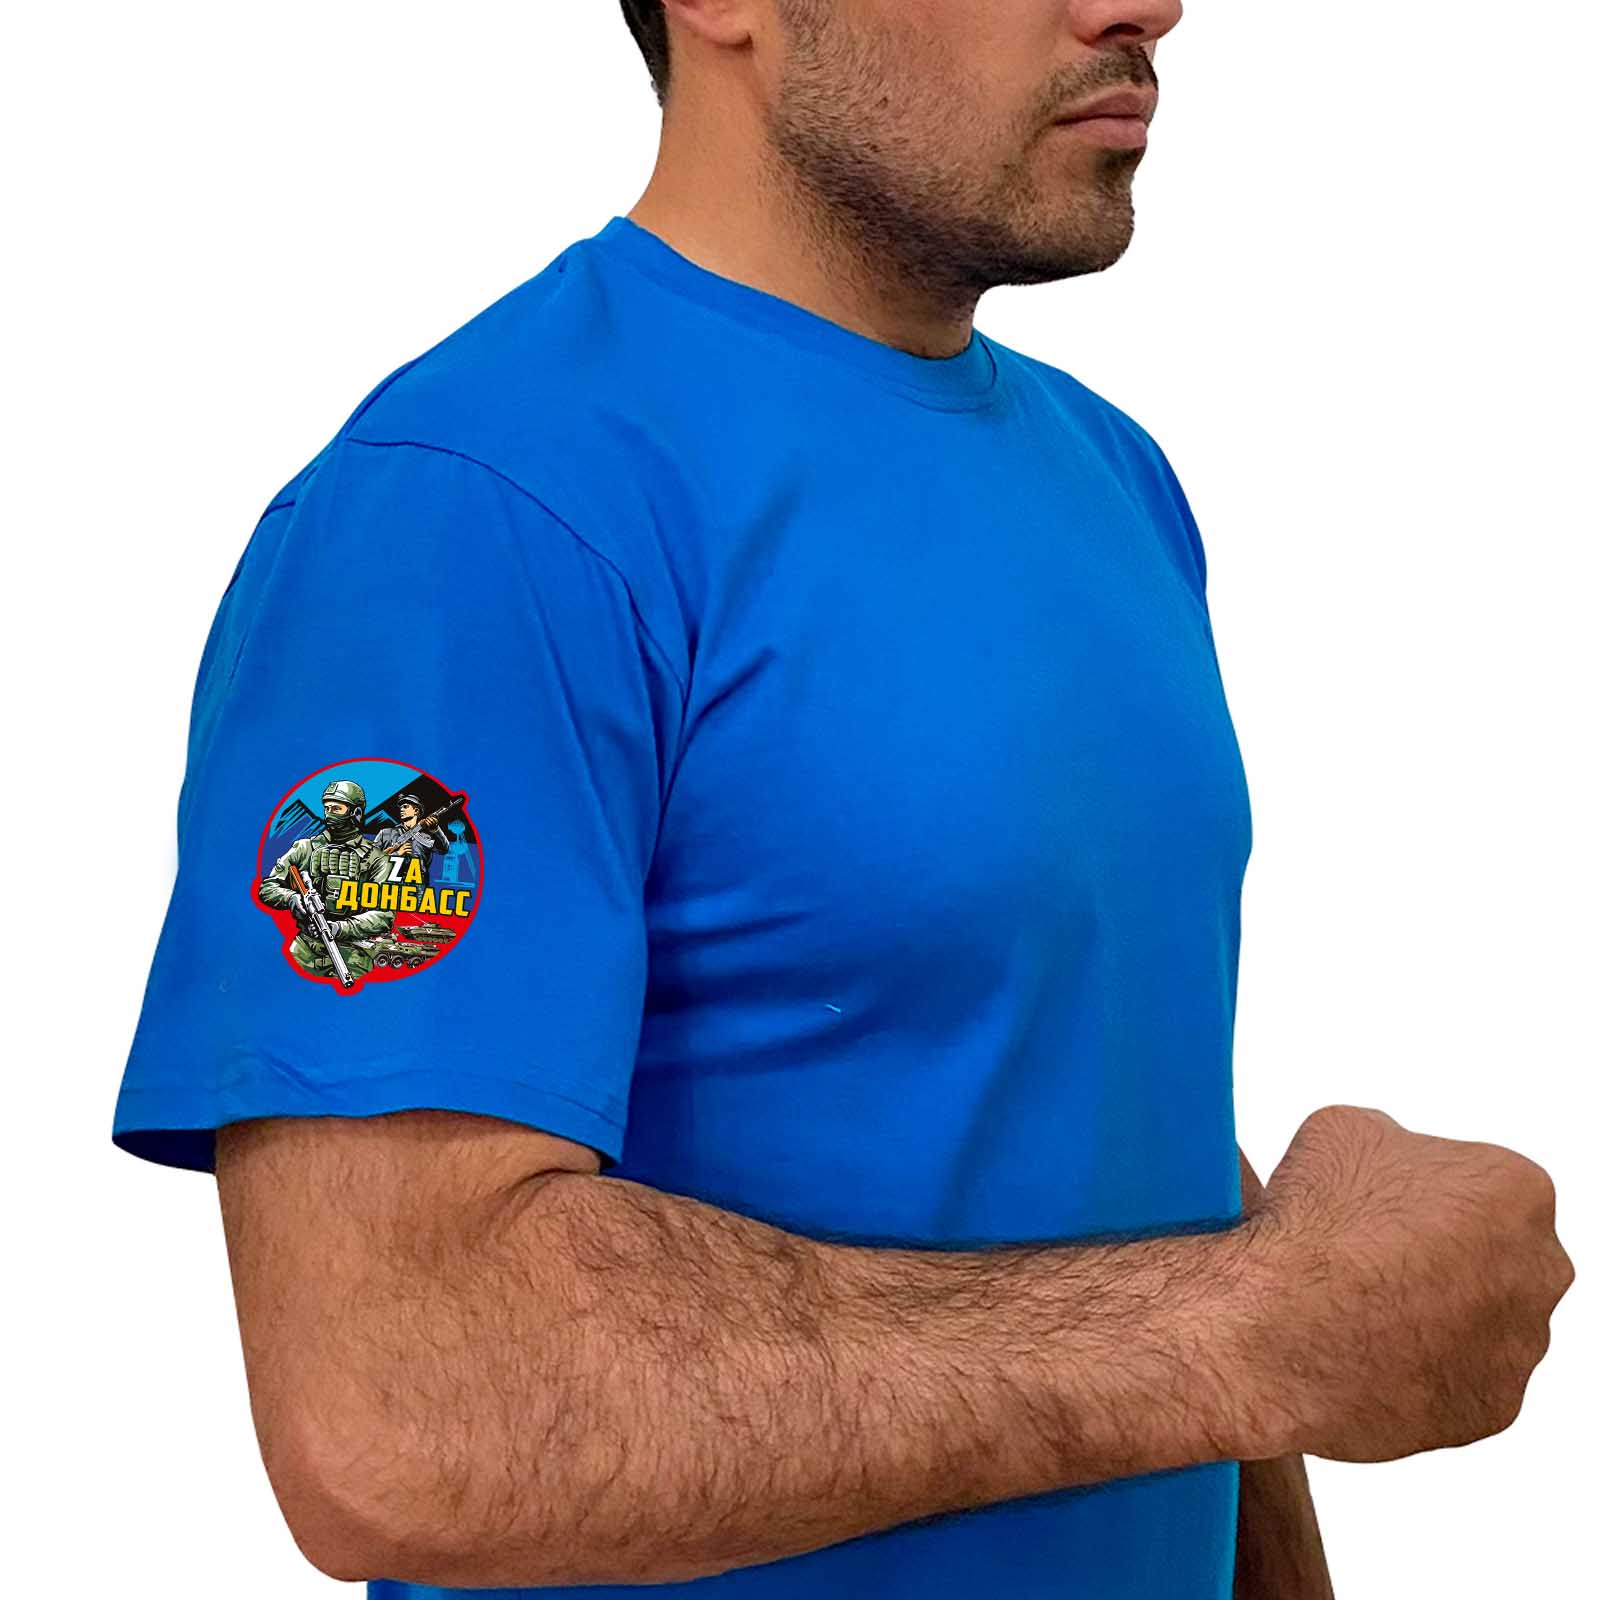 Купить строгую голубую футболку Zа Донбасс с доставкой в ваш город